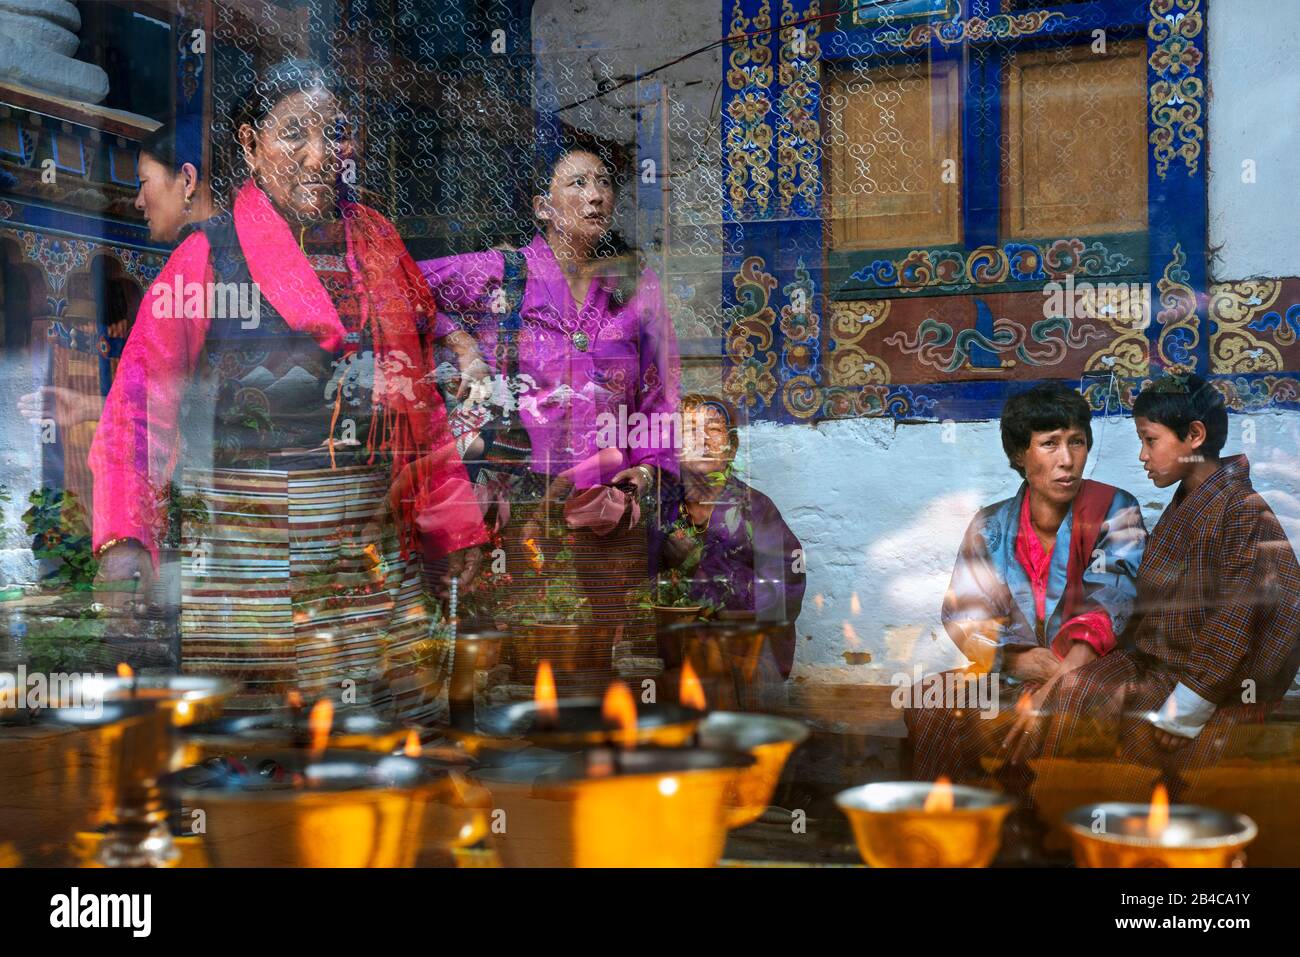 Encens et bougies dans le petit temple de Kyichu Lhakhang près de Paro dans les montagnes de l'Himalaya Bhoutan, Asie du Sud, Asie. Cour intérieure avec une combustion d'encens Banque D'Images